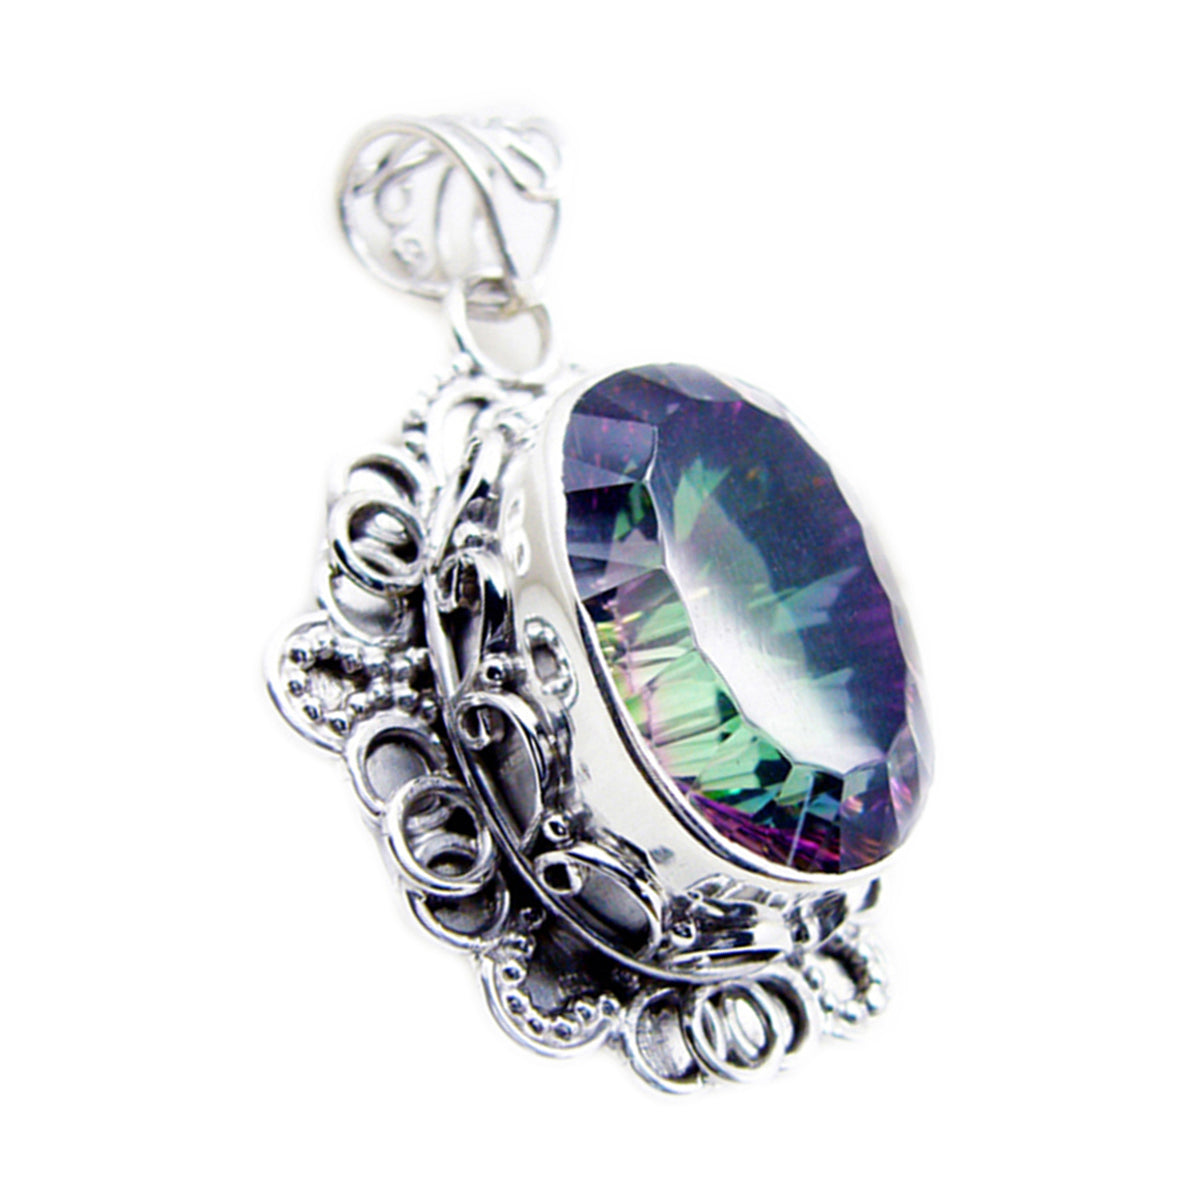 riyo adorabili gemme ciondolo in argento ovale sfaccettato con quarzo mistico multicolore, regalo per moglie